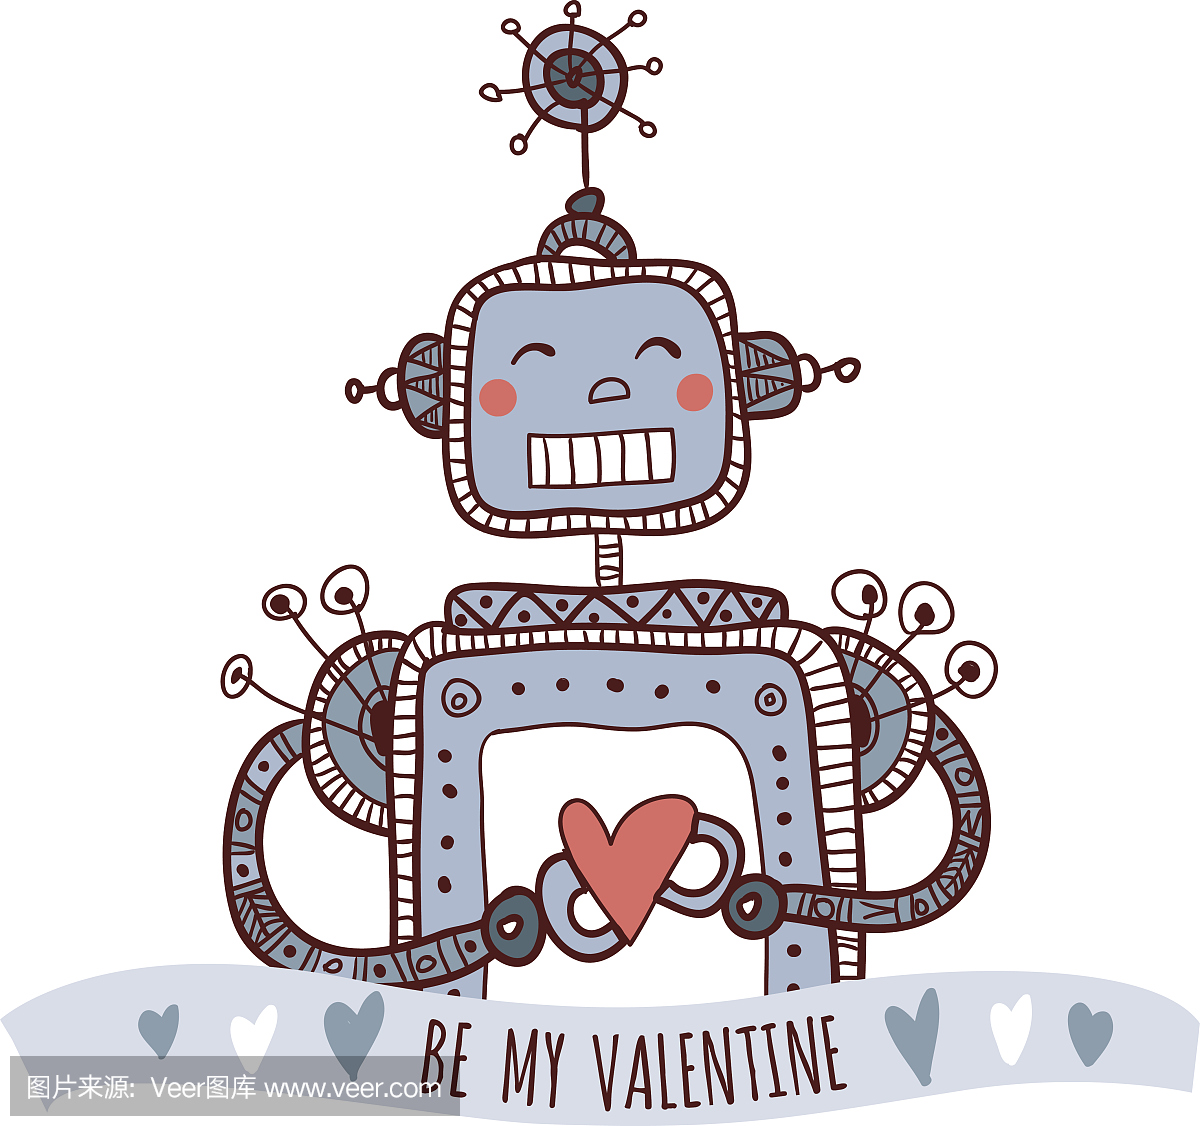 机器人与心脏,成为我的情人